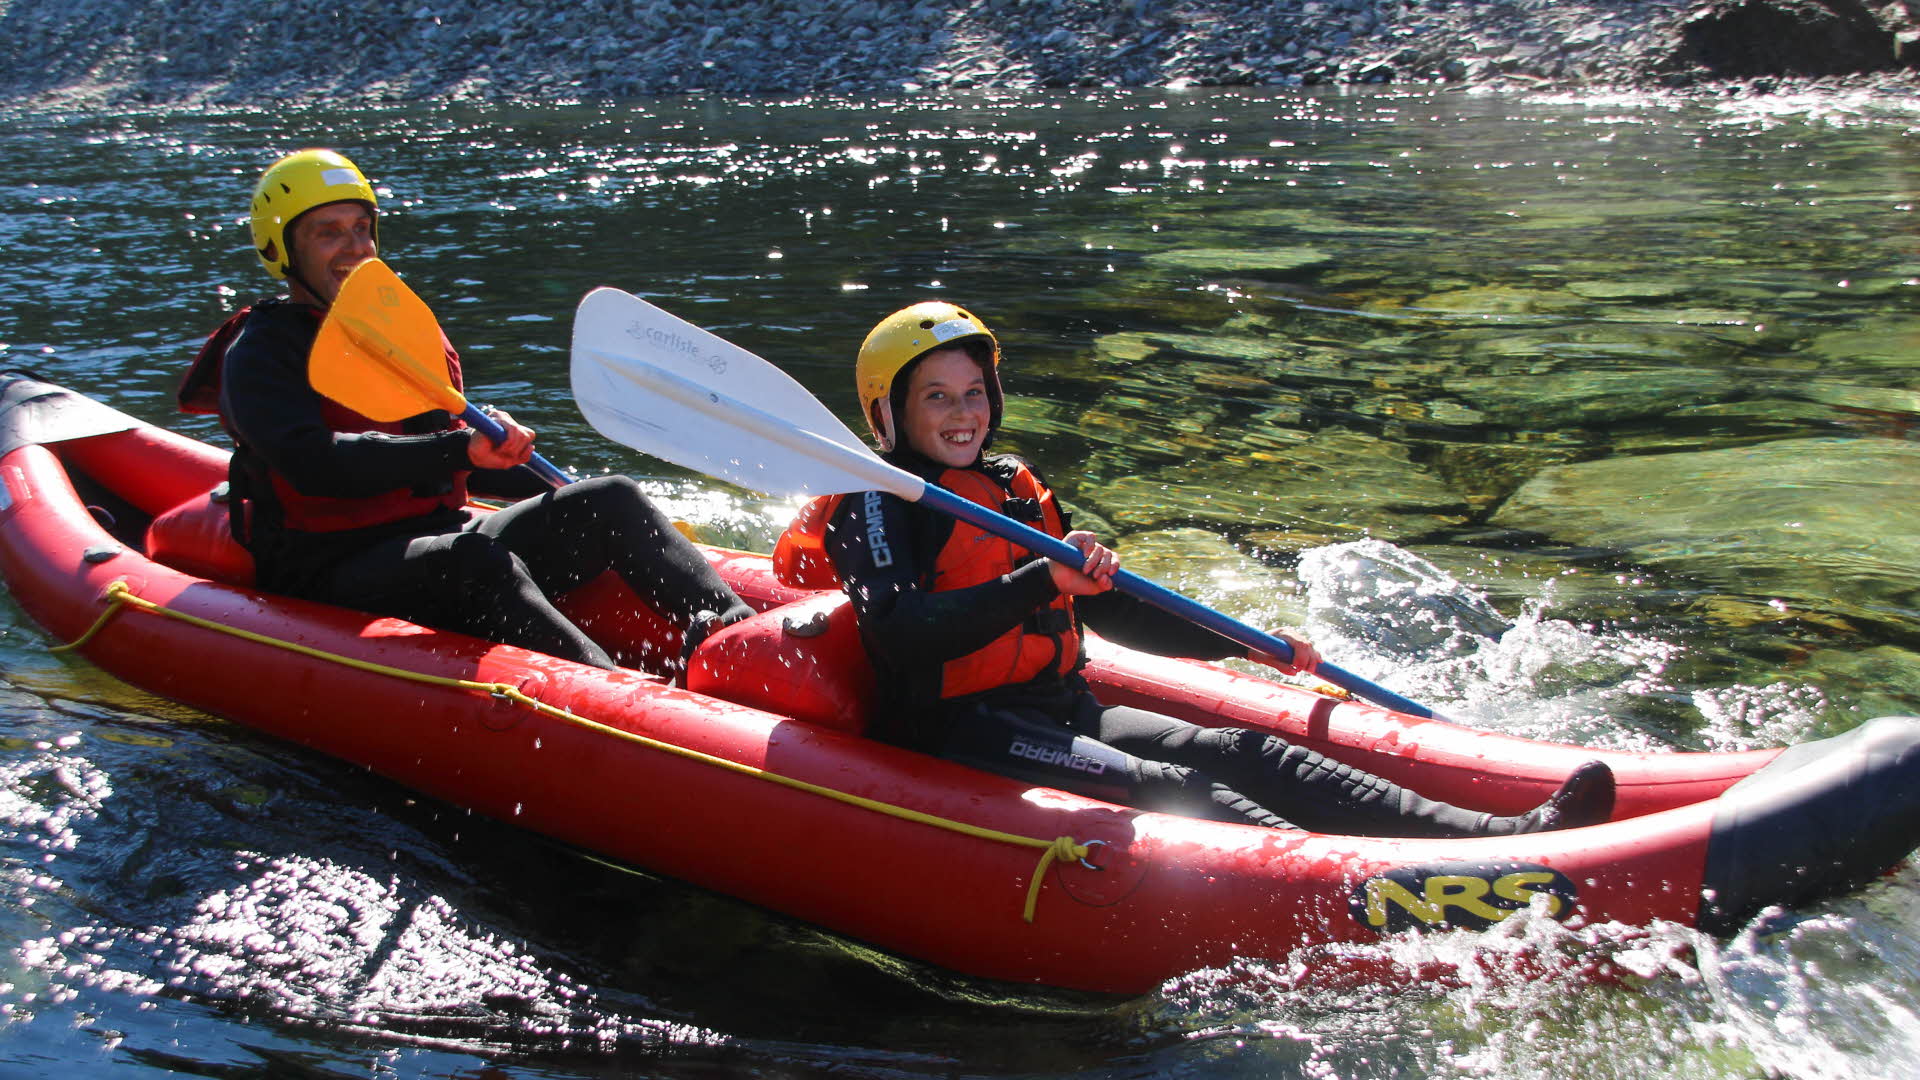 Dos niños sonríen en una balsa roja en un río de aguas transparentes. Sostienen sus remos y llevan chalecos salvavidas, cascos y trajes de neopreno.